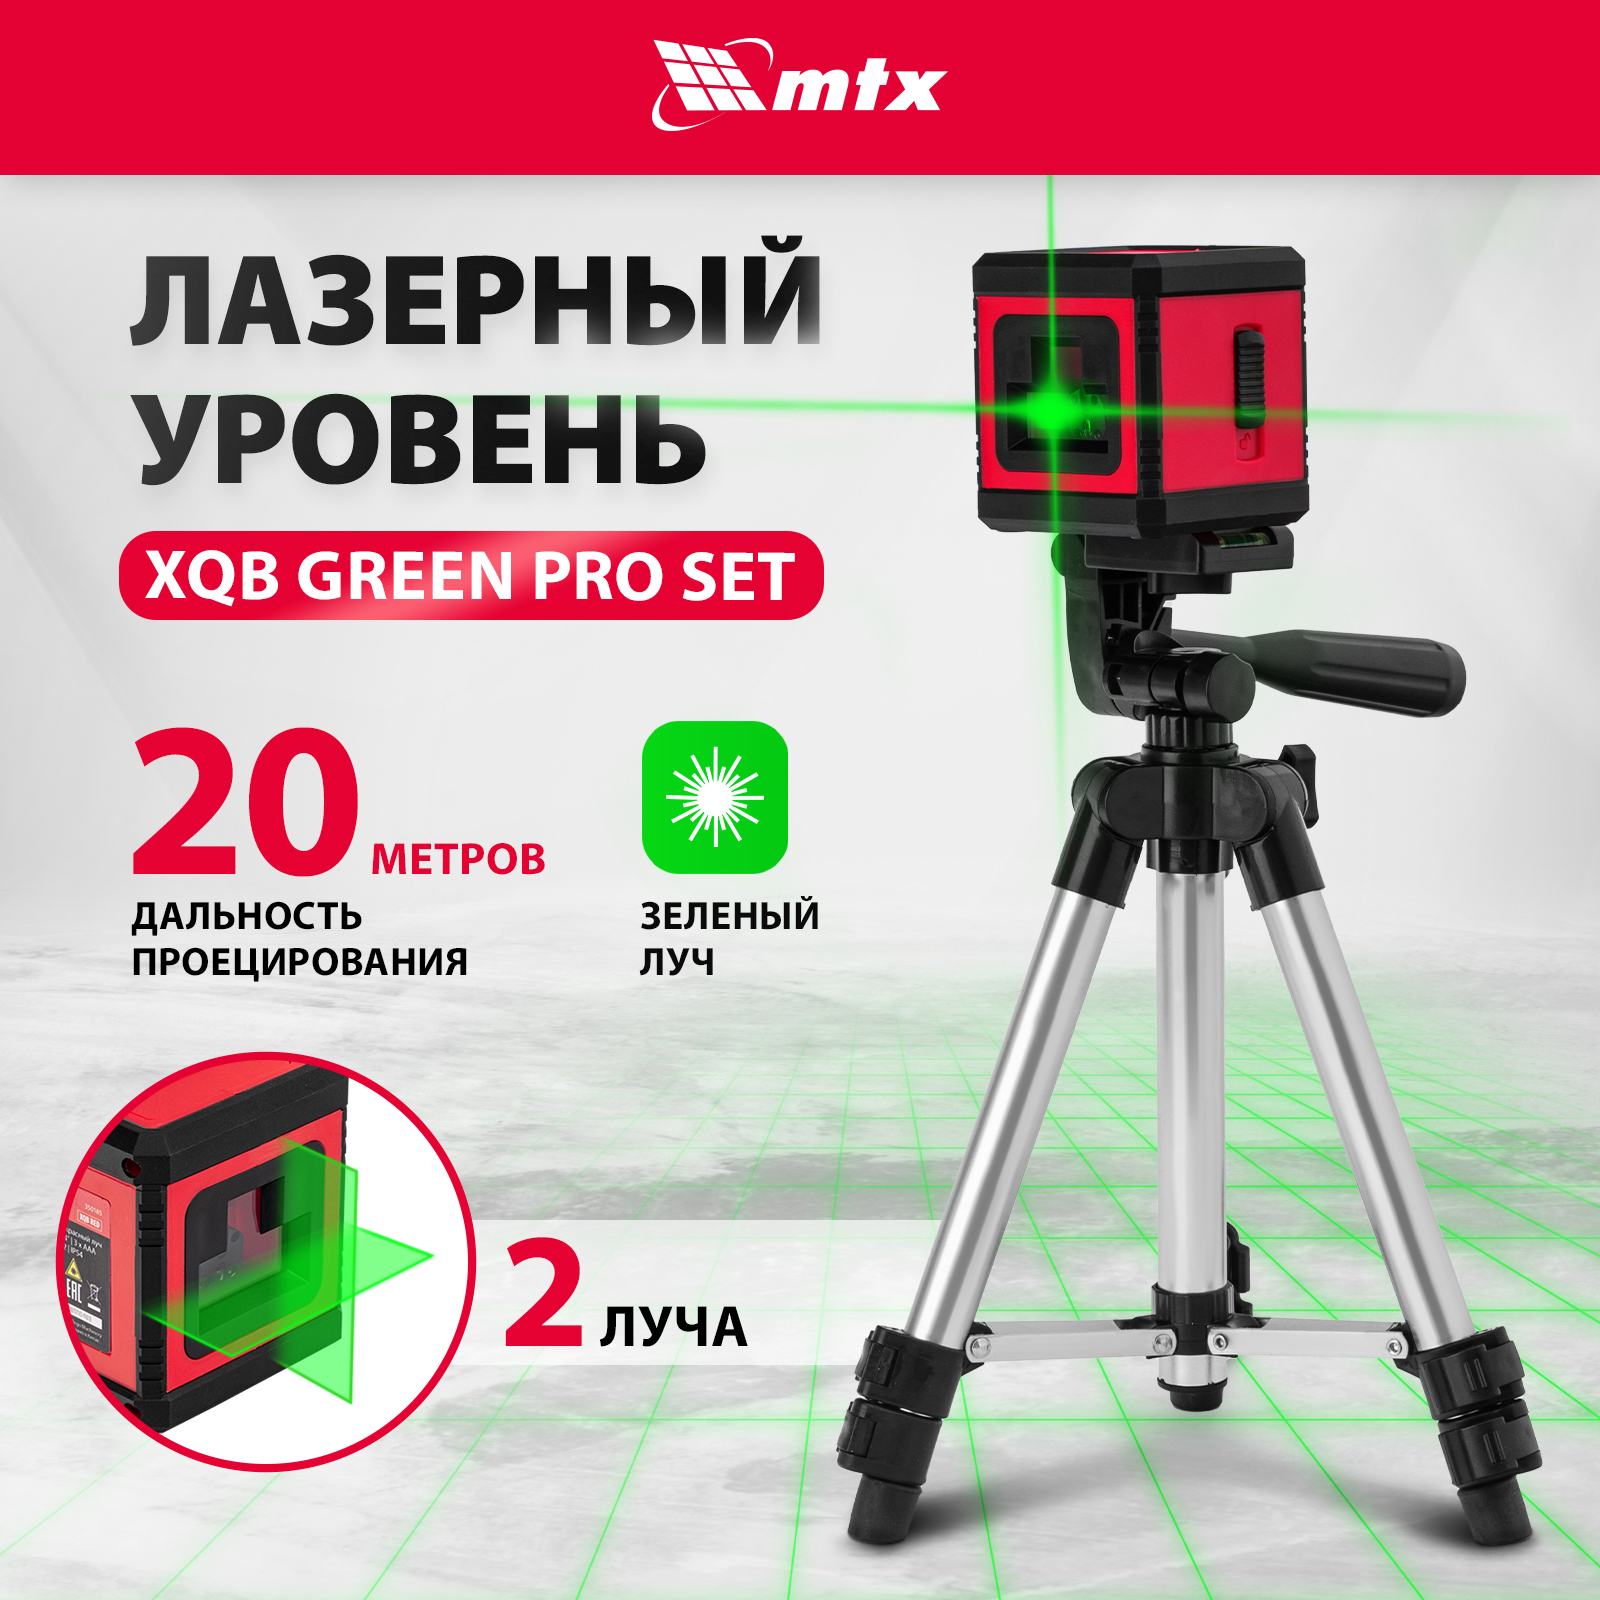 очный горшок live in green лаура 23982 красный Лазерный уровень MTX XQB GREEN Pro SET, 20 м, зеленый луч, батарейки, штатив 350195